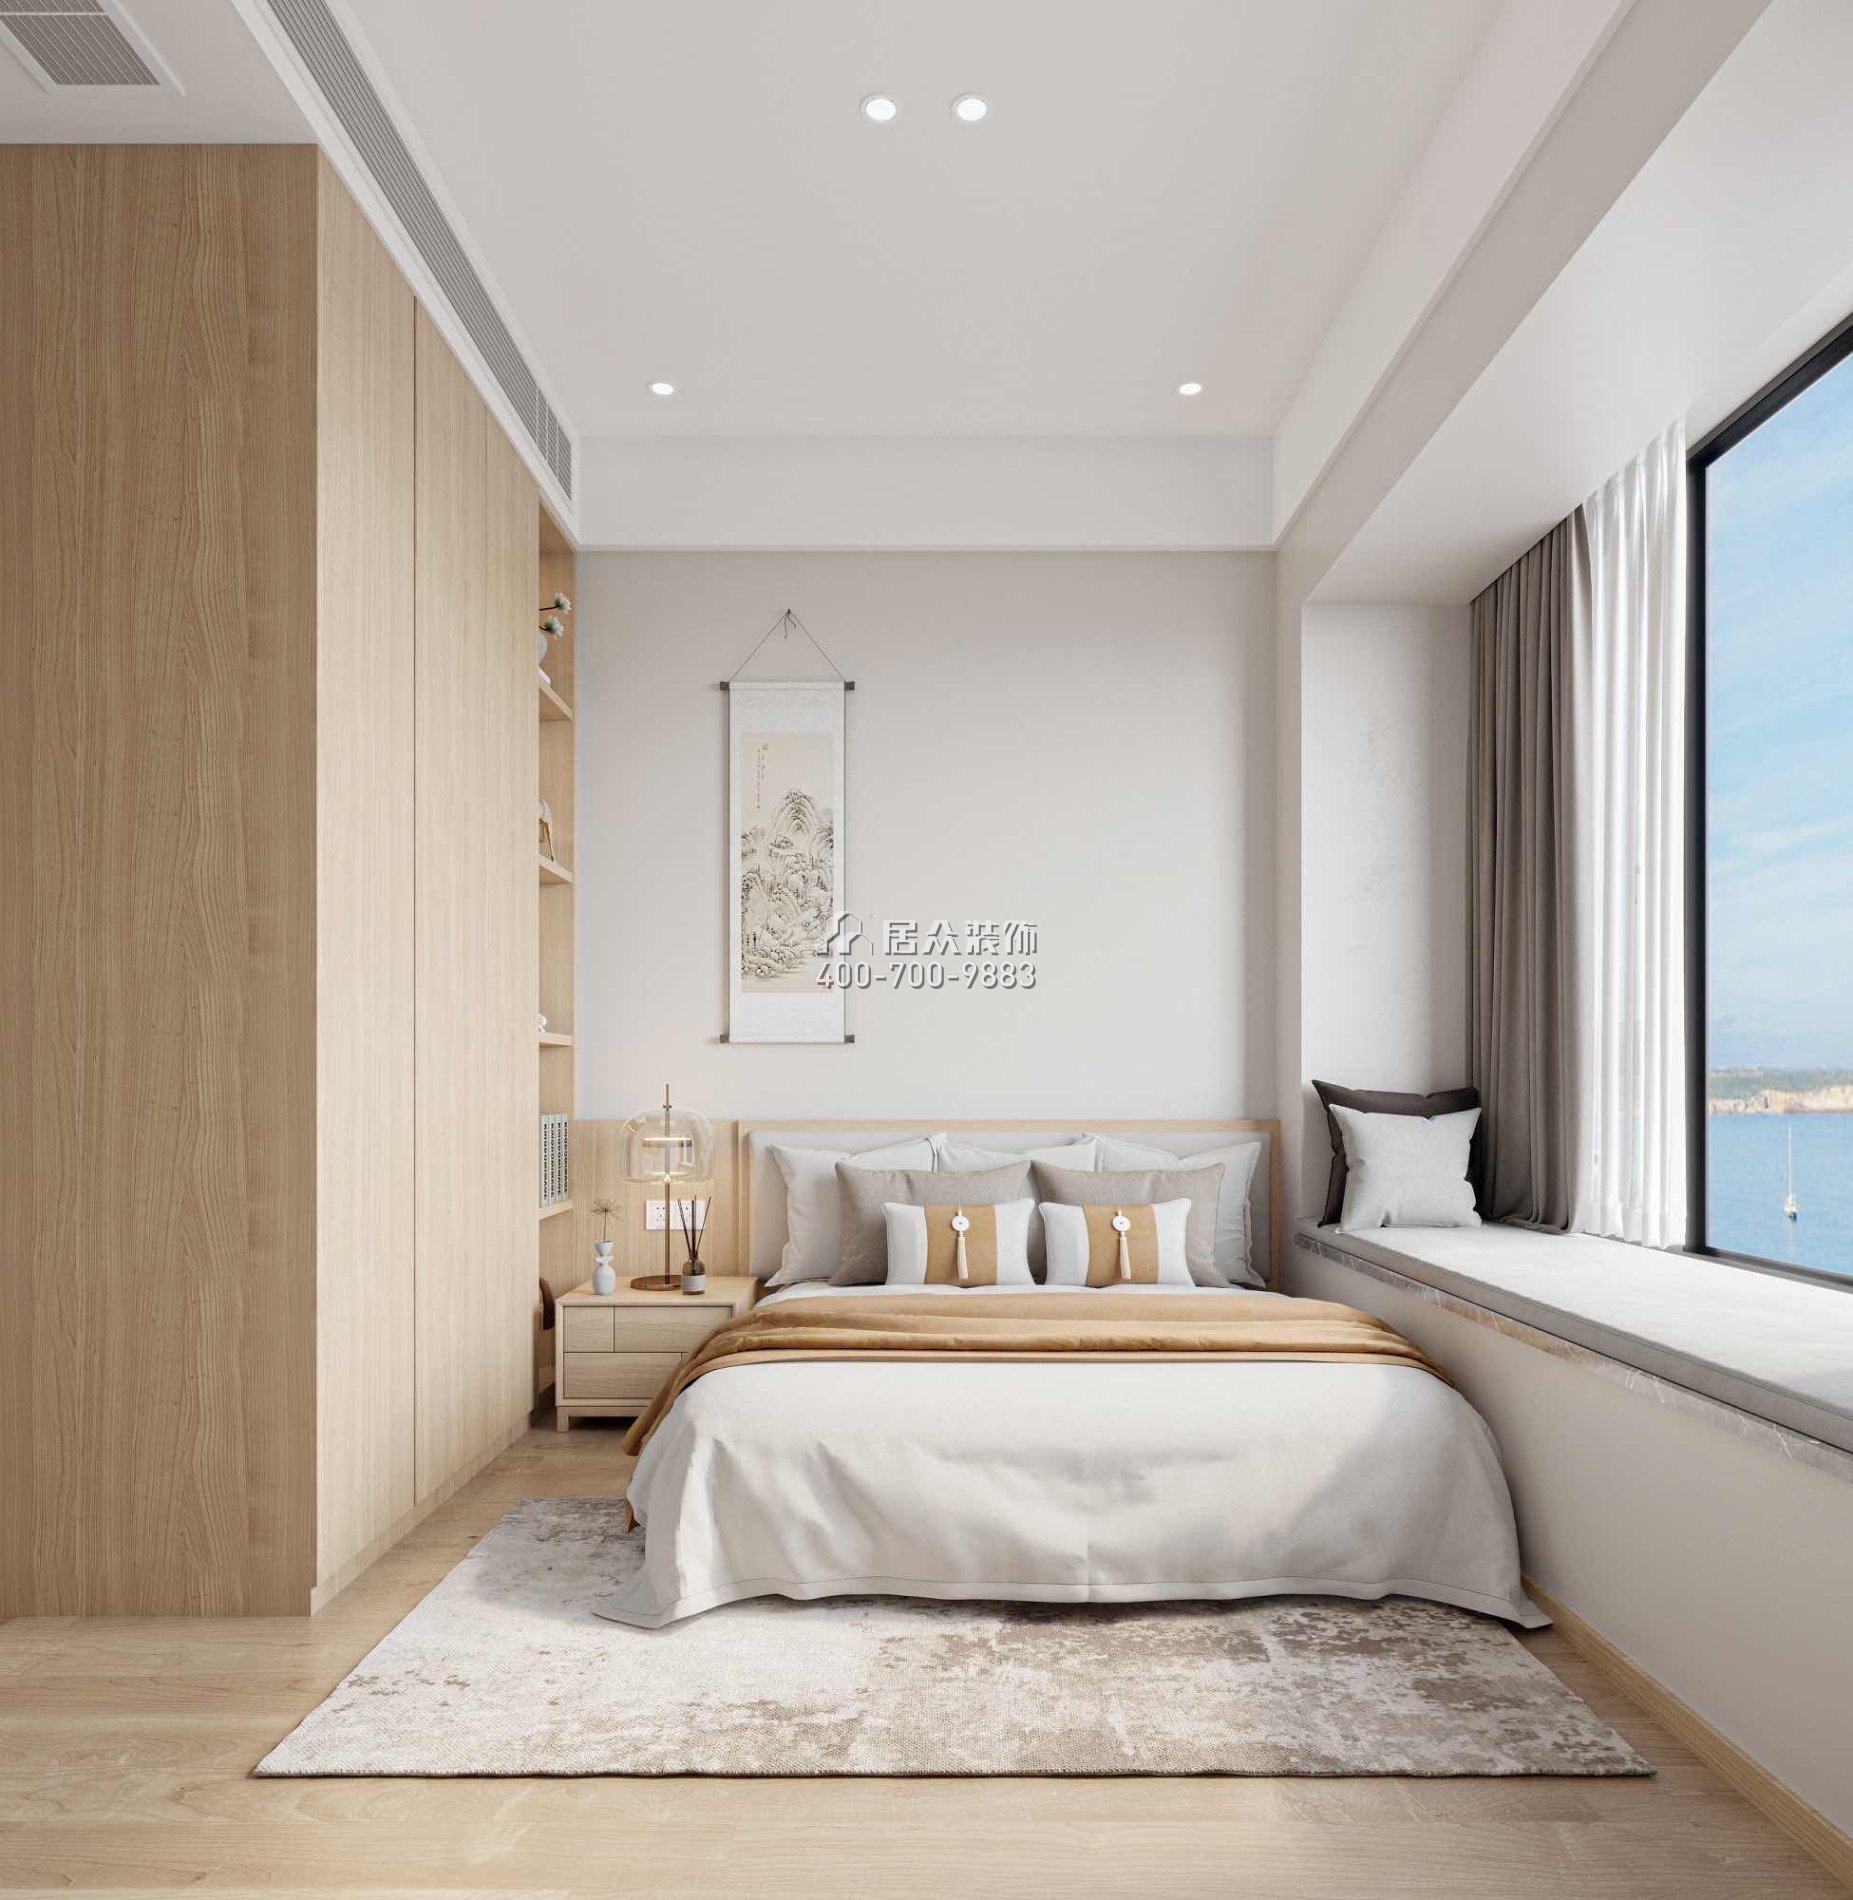 华发绿洋湾191平方米其他风格平层户型卧室装修效果图